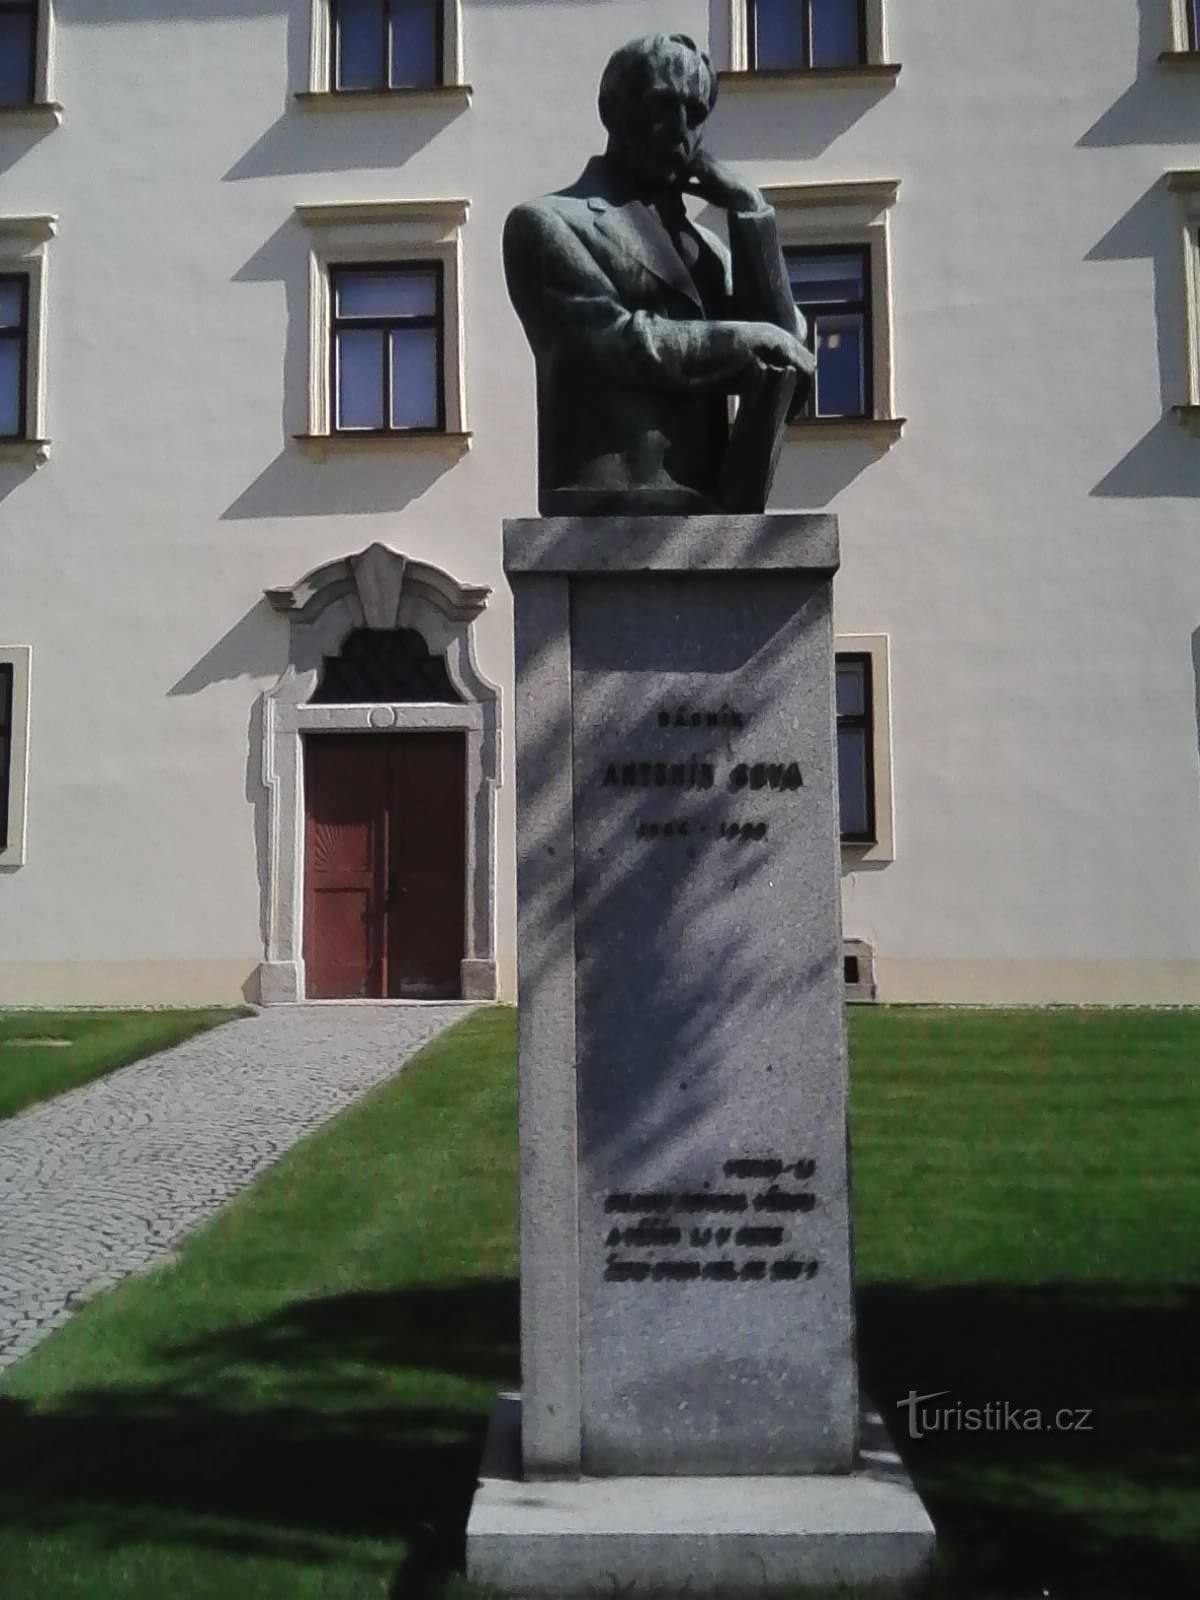 1. Το άγαλμα ενός σημαντικού Τσέχου ποιητή και μυθιστοριογράφου βρίσκεται δίπλα στο κάστρο Pacov, στο οποίο